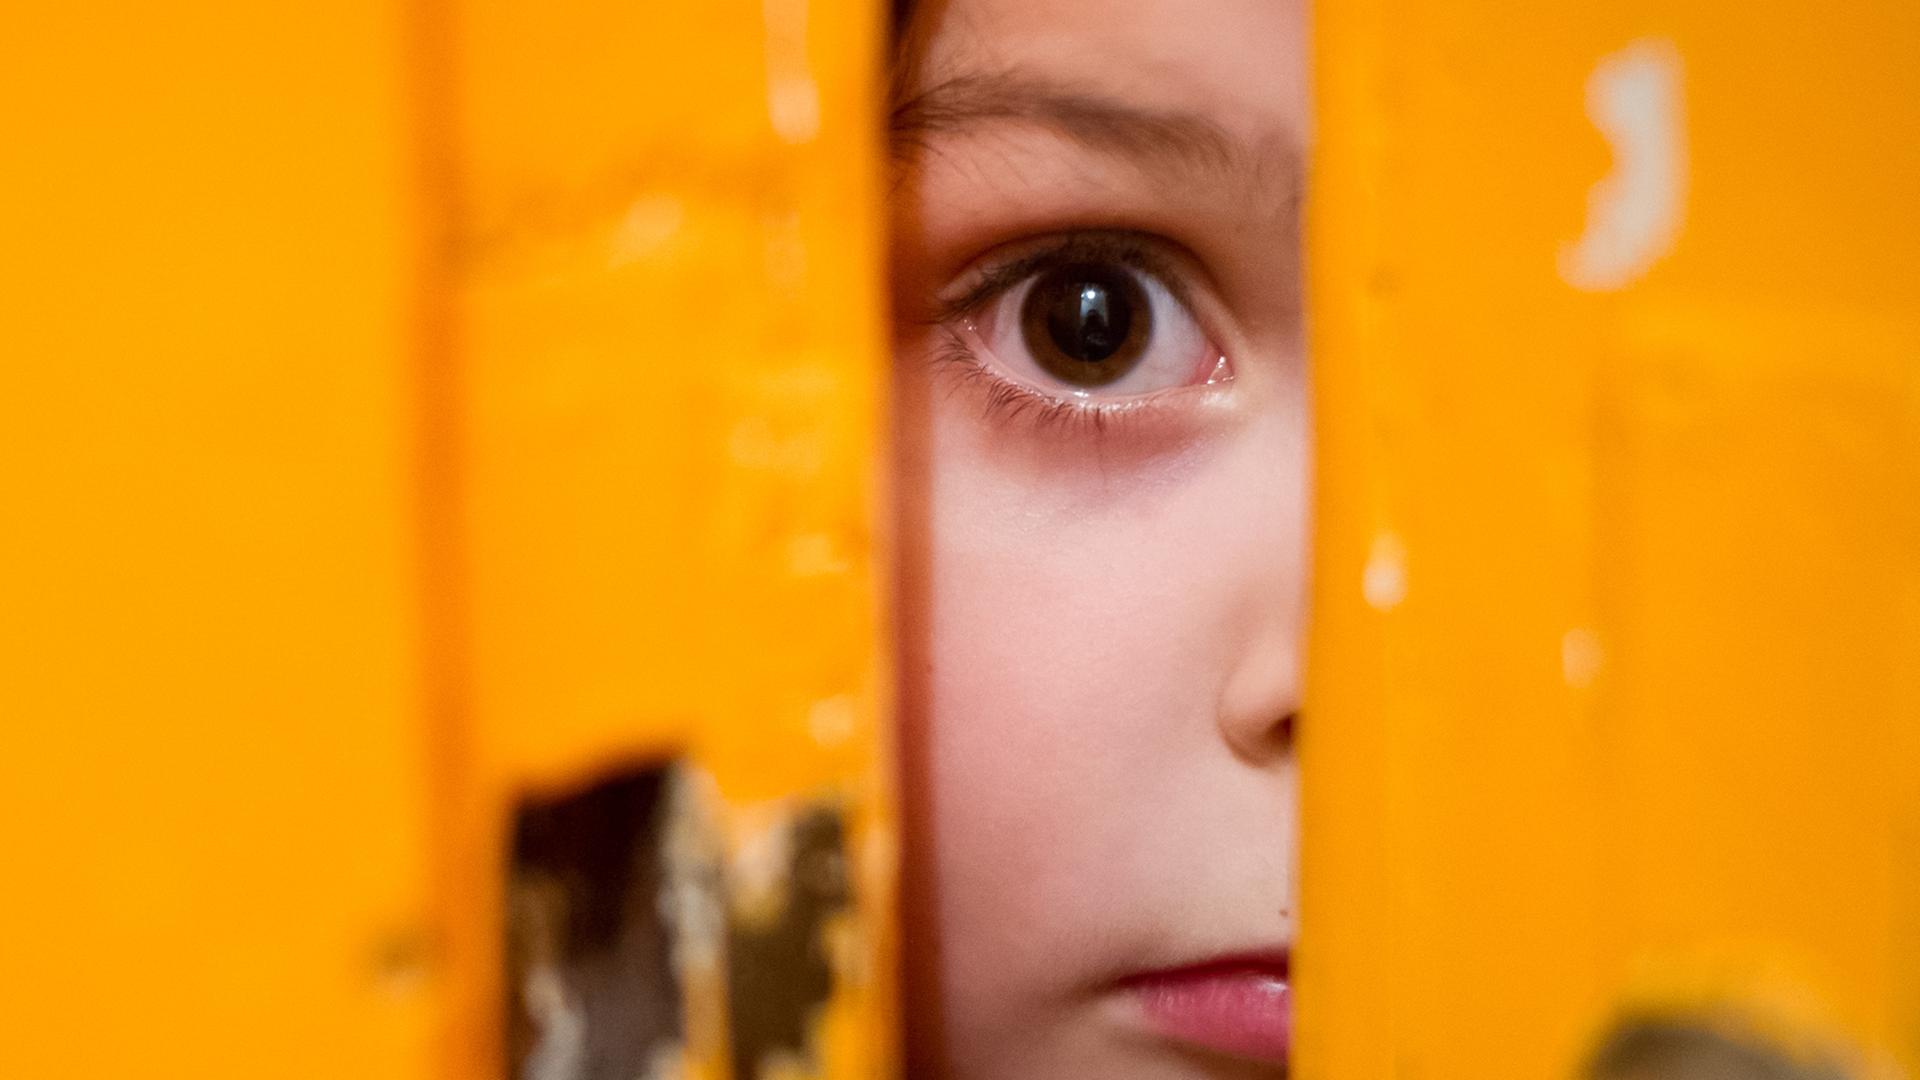 Ein junges Mädchen schaut durch einen Türschlitz.